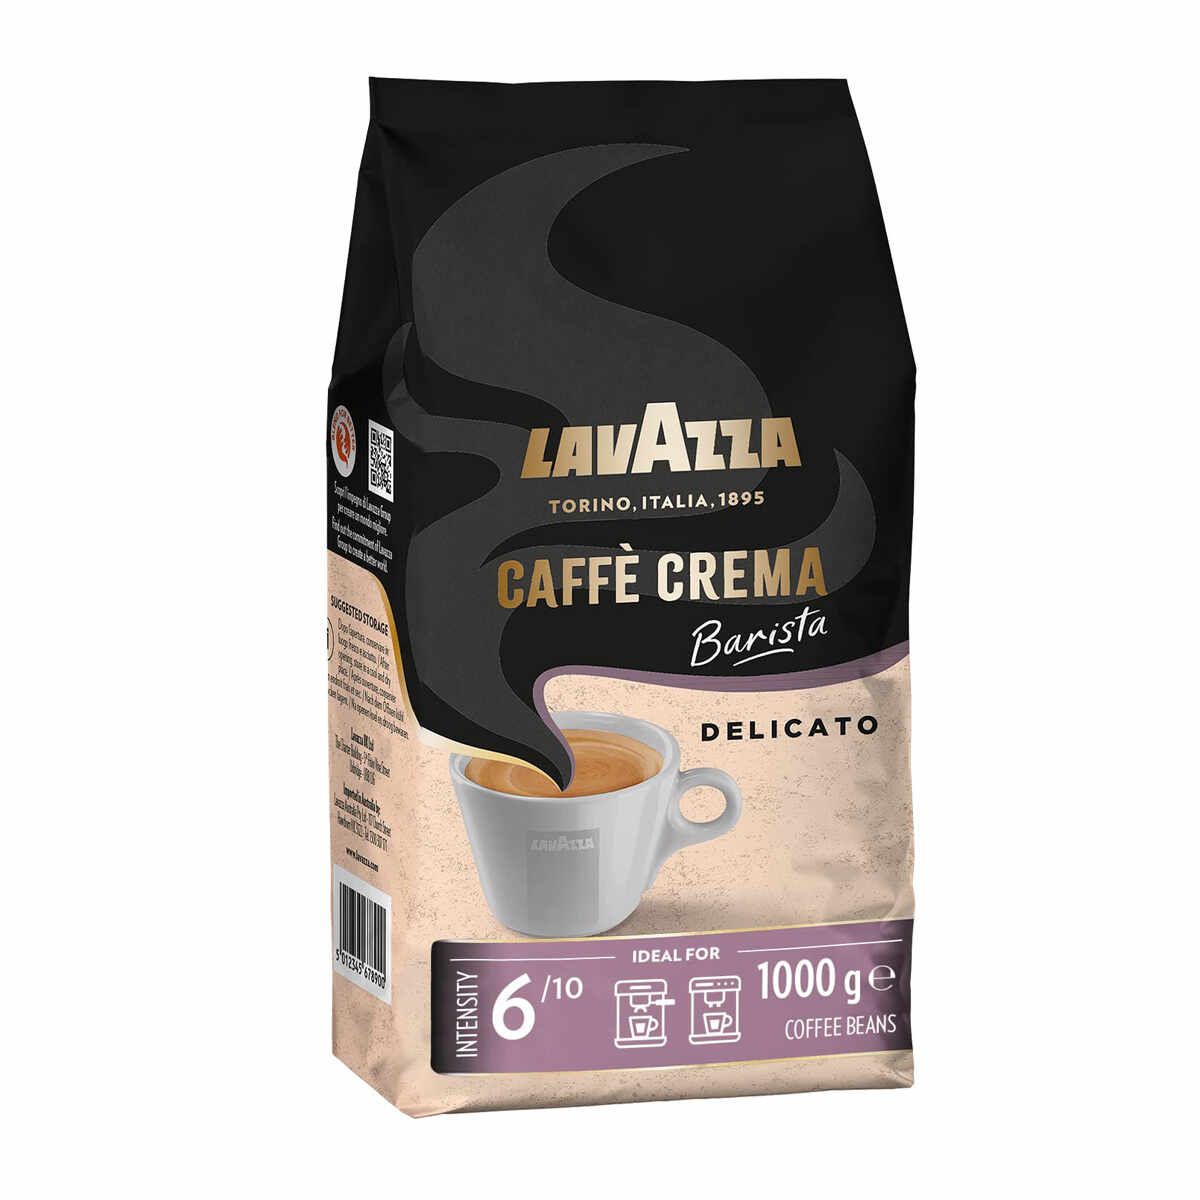 Lavazza Caffe Crema Barista Delicato cafea boabe 1 kg